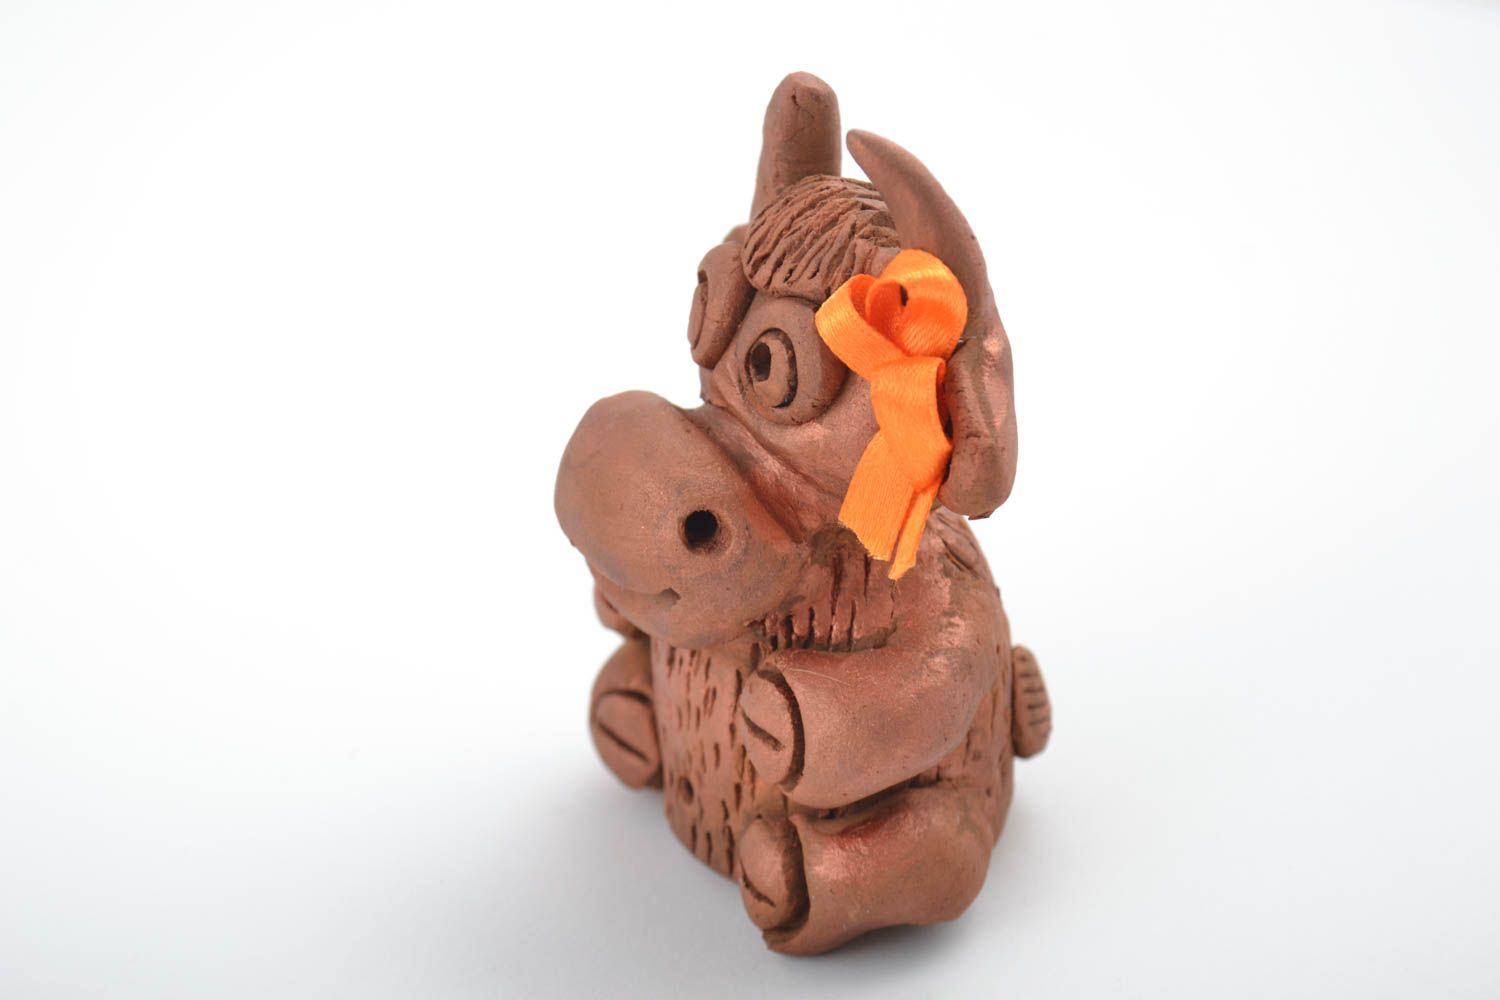 Ceramic figurine handmade animal figurines handmade home decor souvenir ideas photo 4